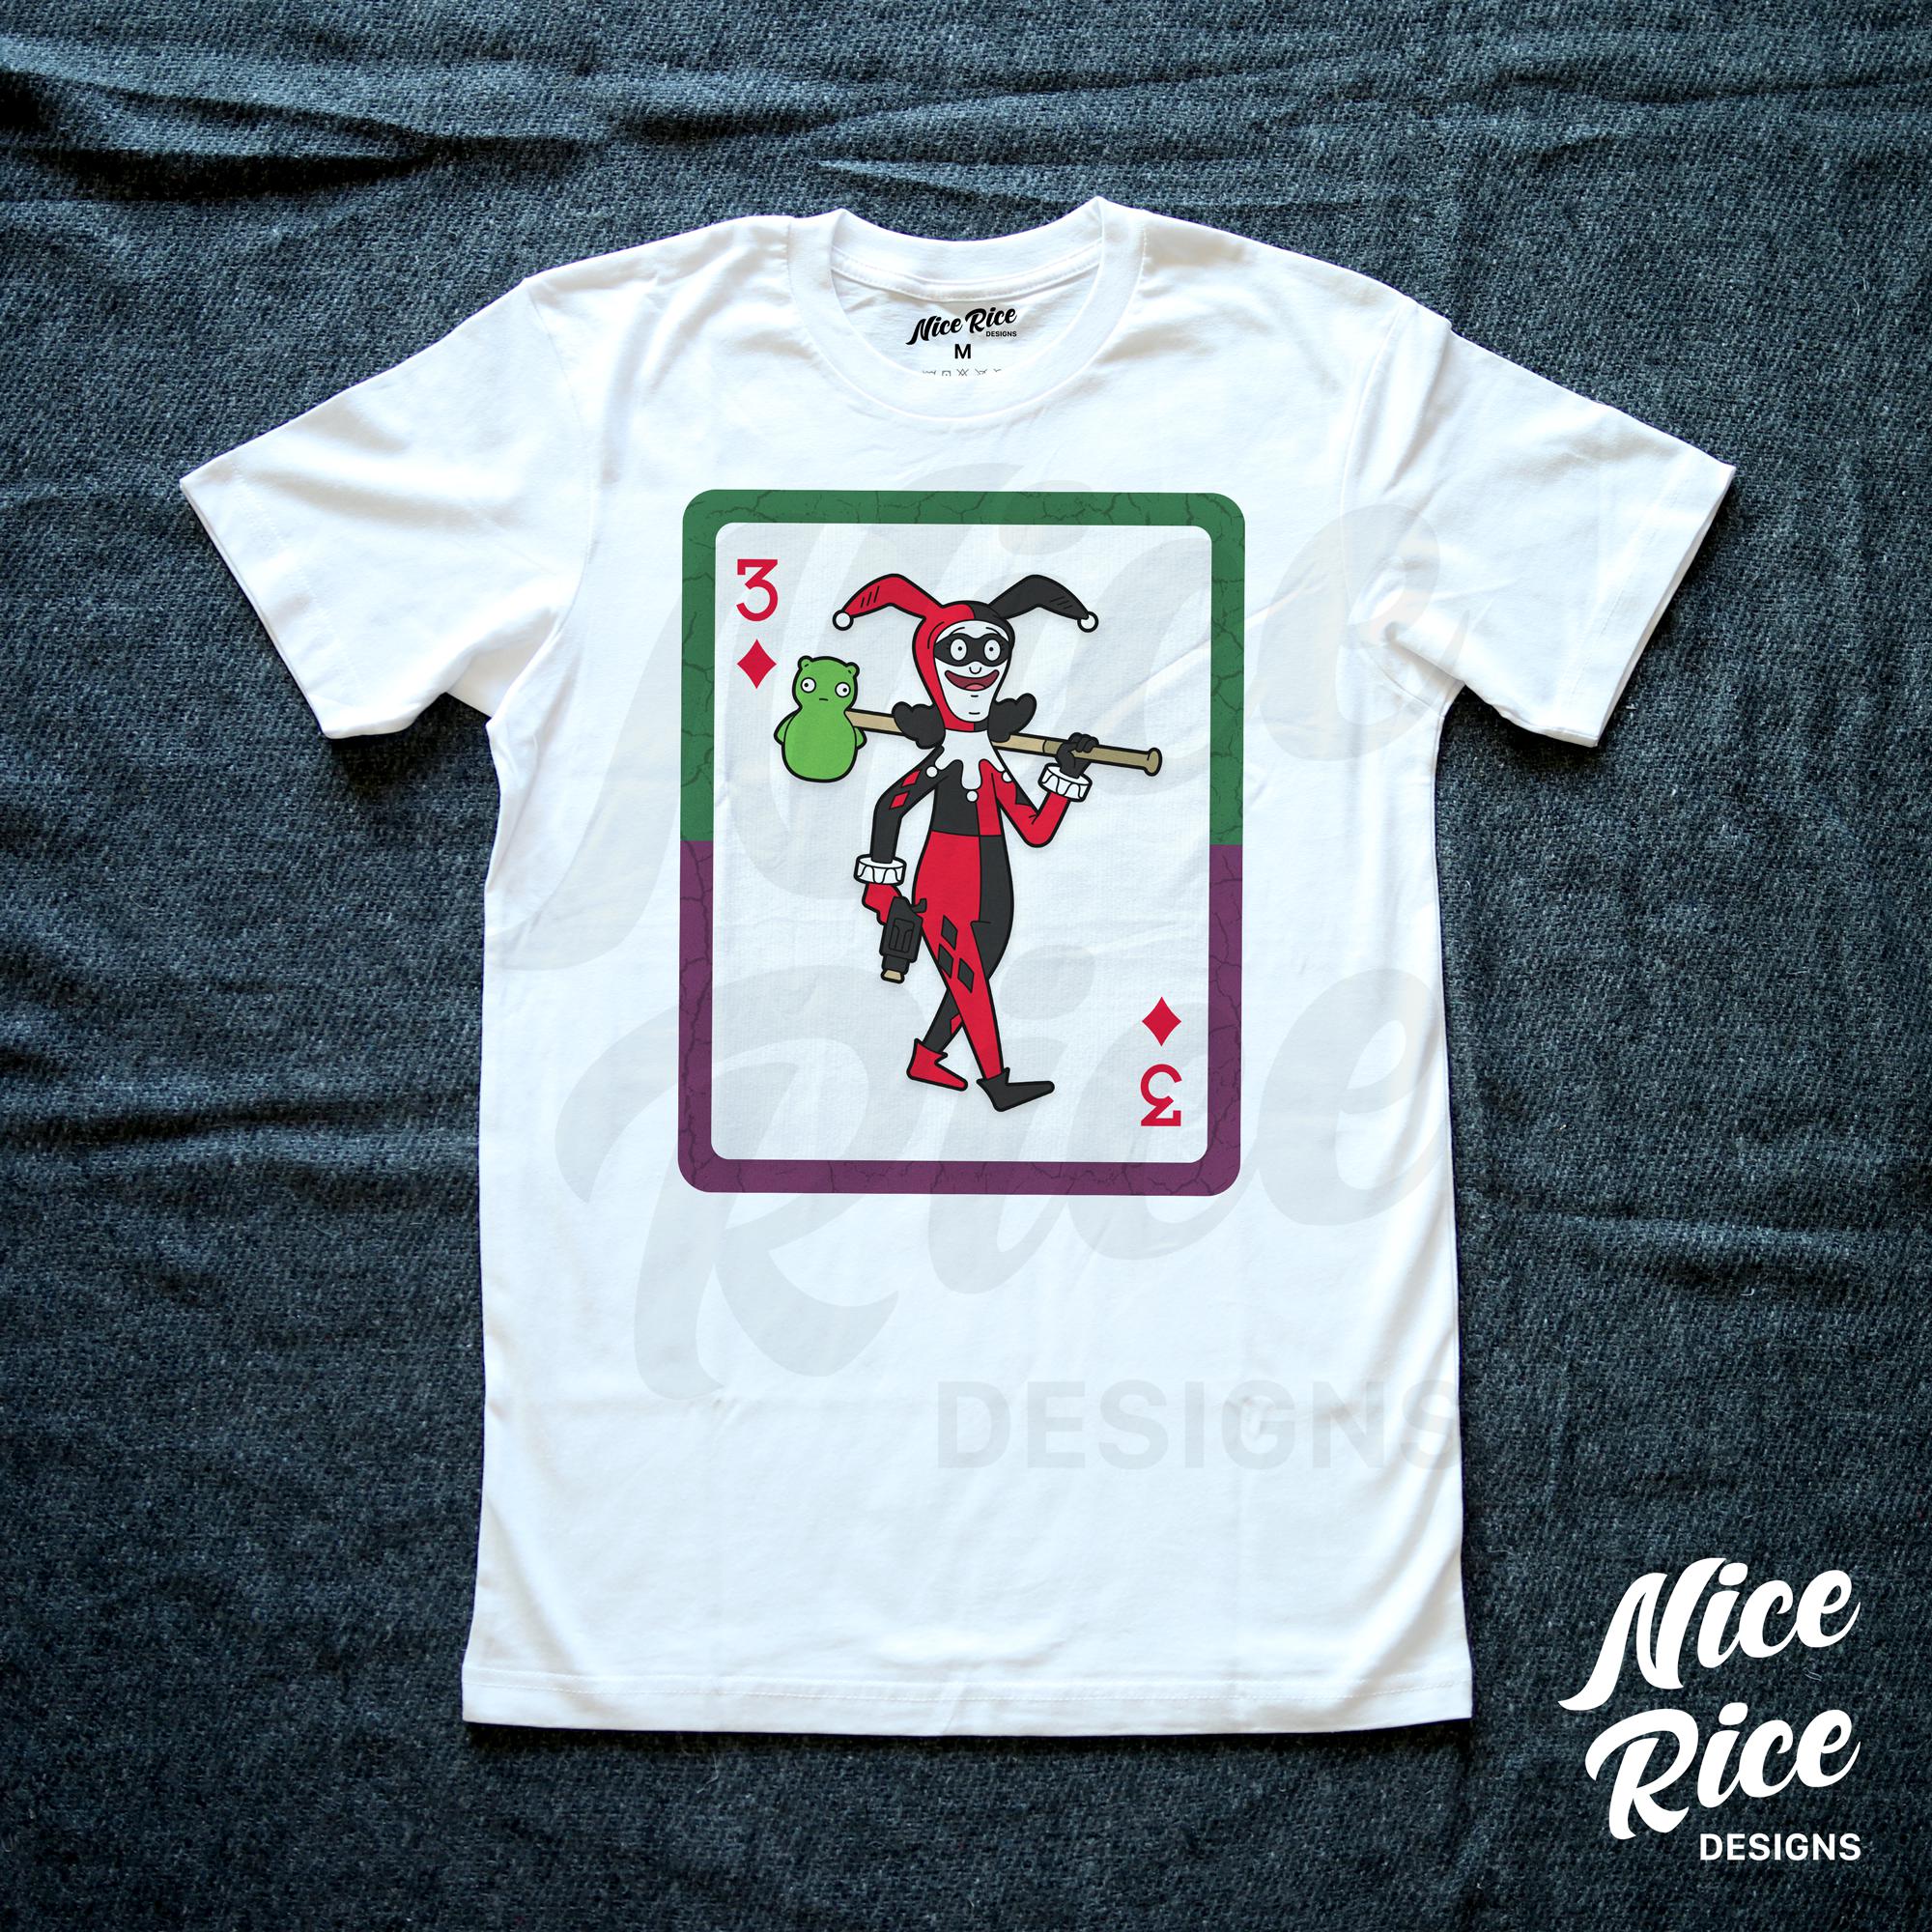 Three of Diamonds Shirt by Nice Rice Designs